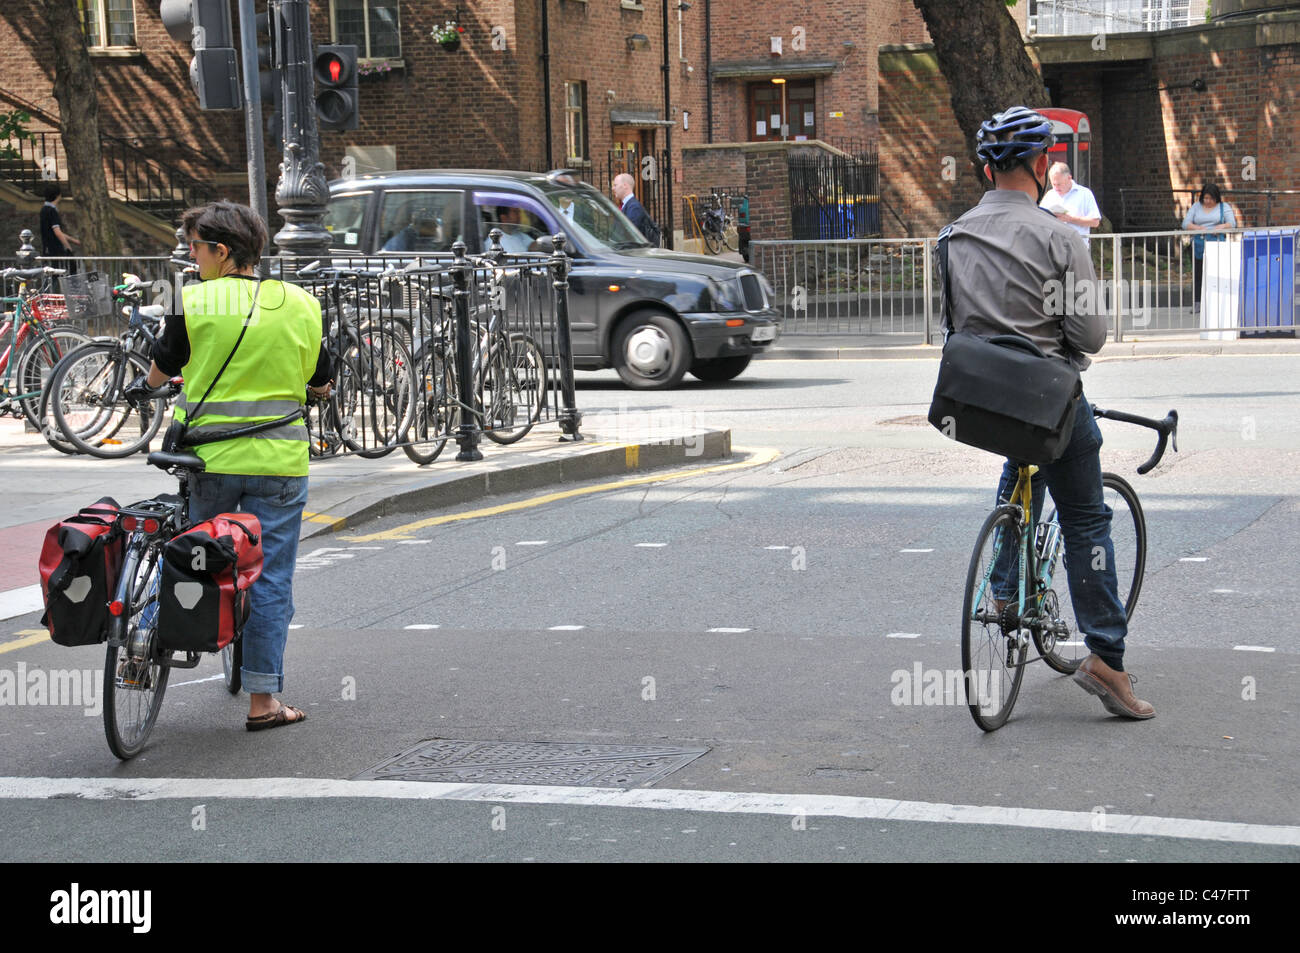 Deux cyclistes l'attente aux feux de circulation London black cab road junction Banque D'Images